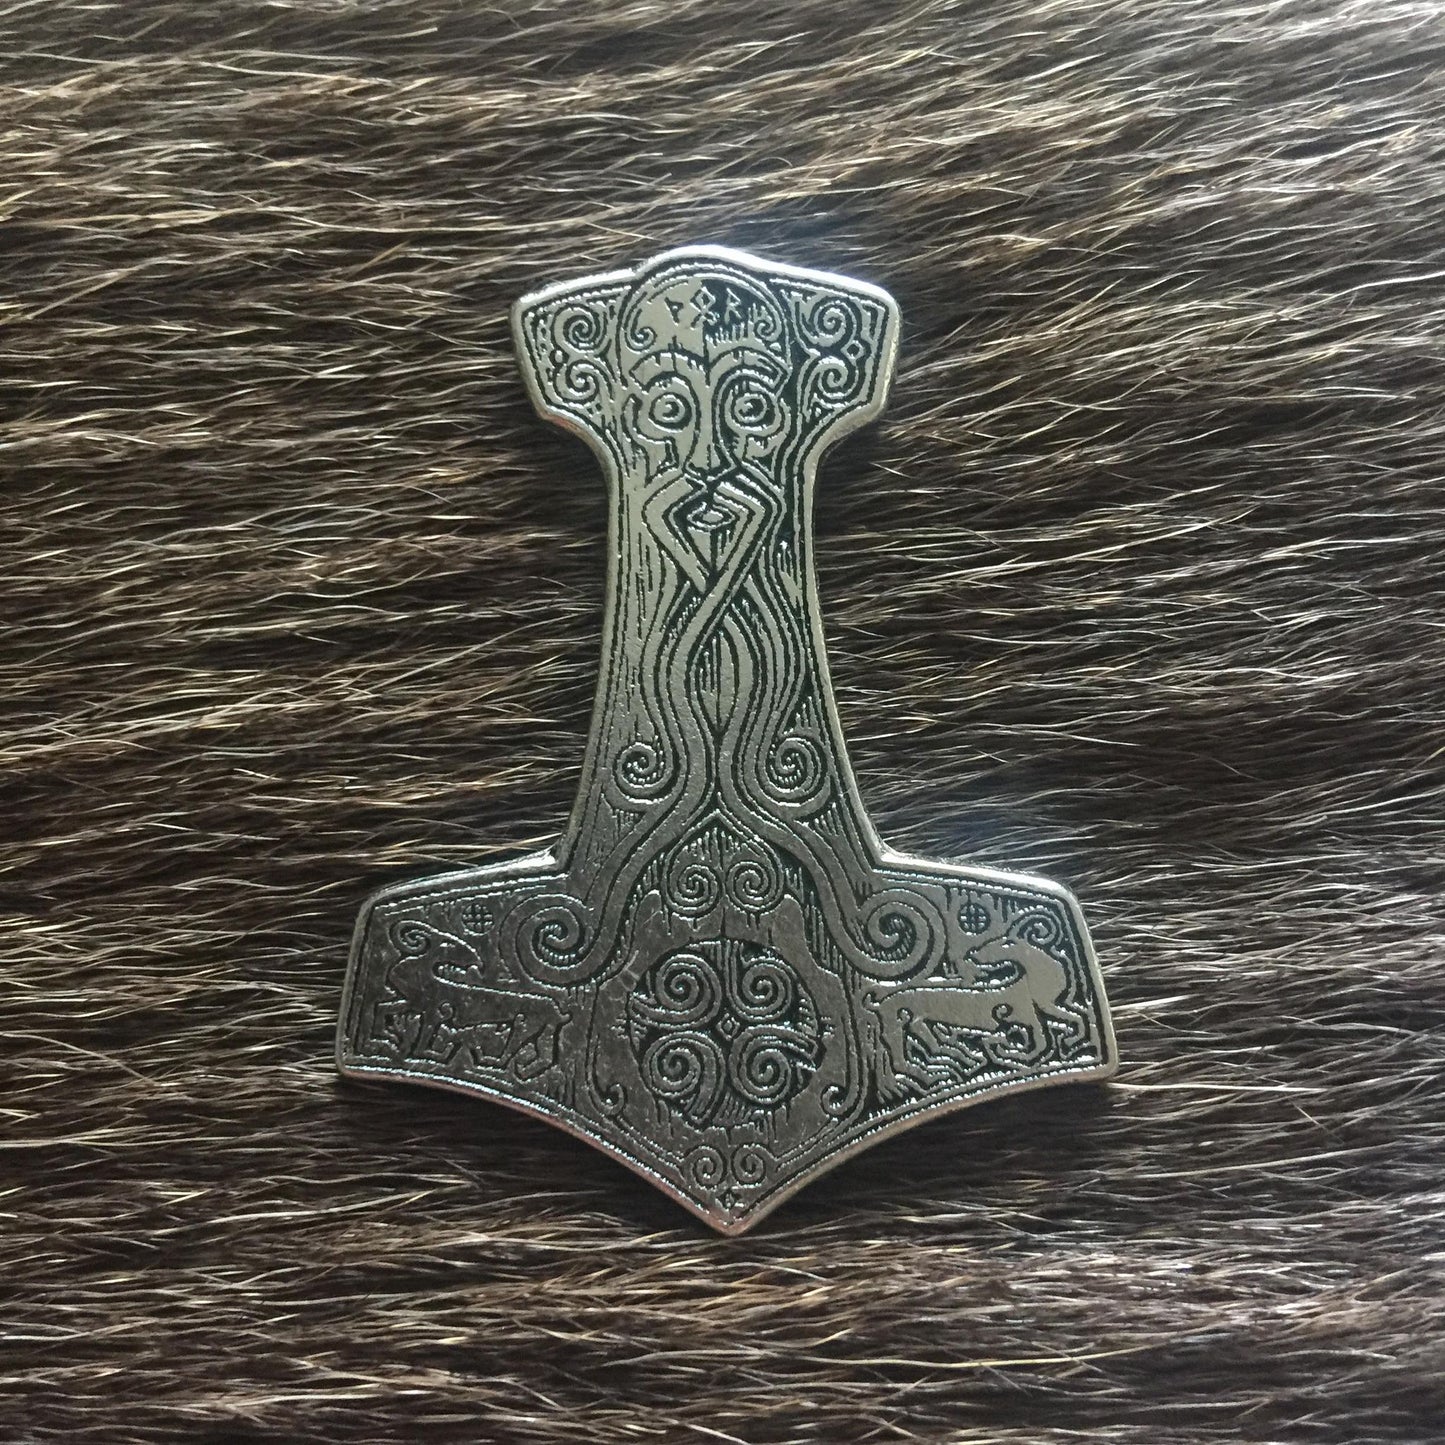 Thor's Hammer Metal Pin